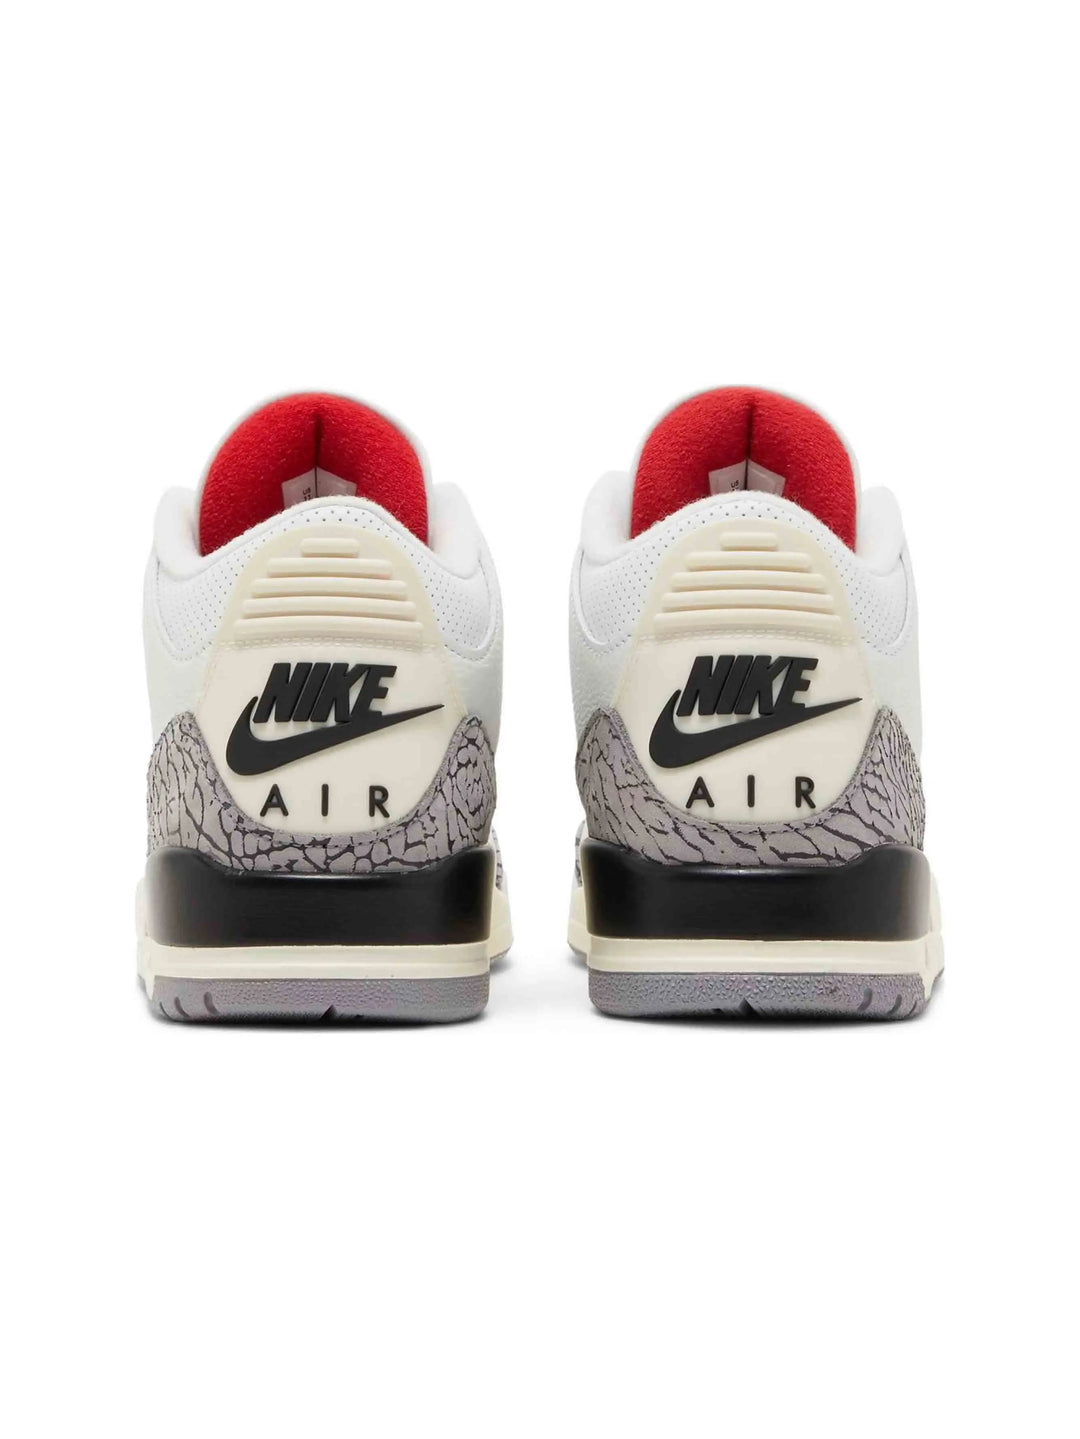 Nike Air Jordan 3 Retro White Cement Reimagined Prior